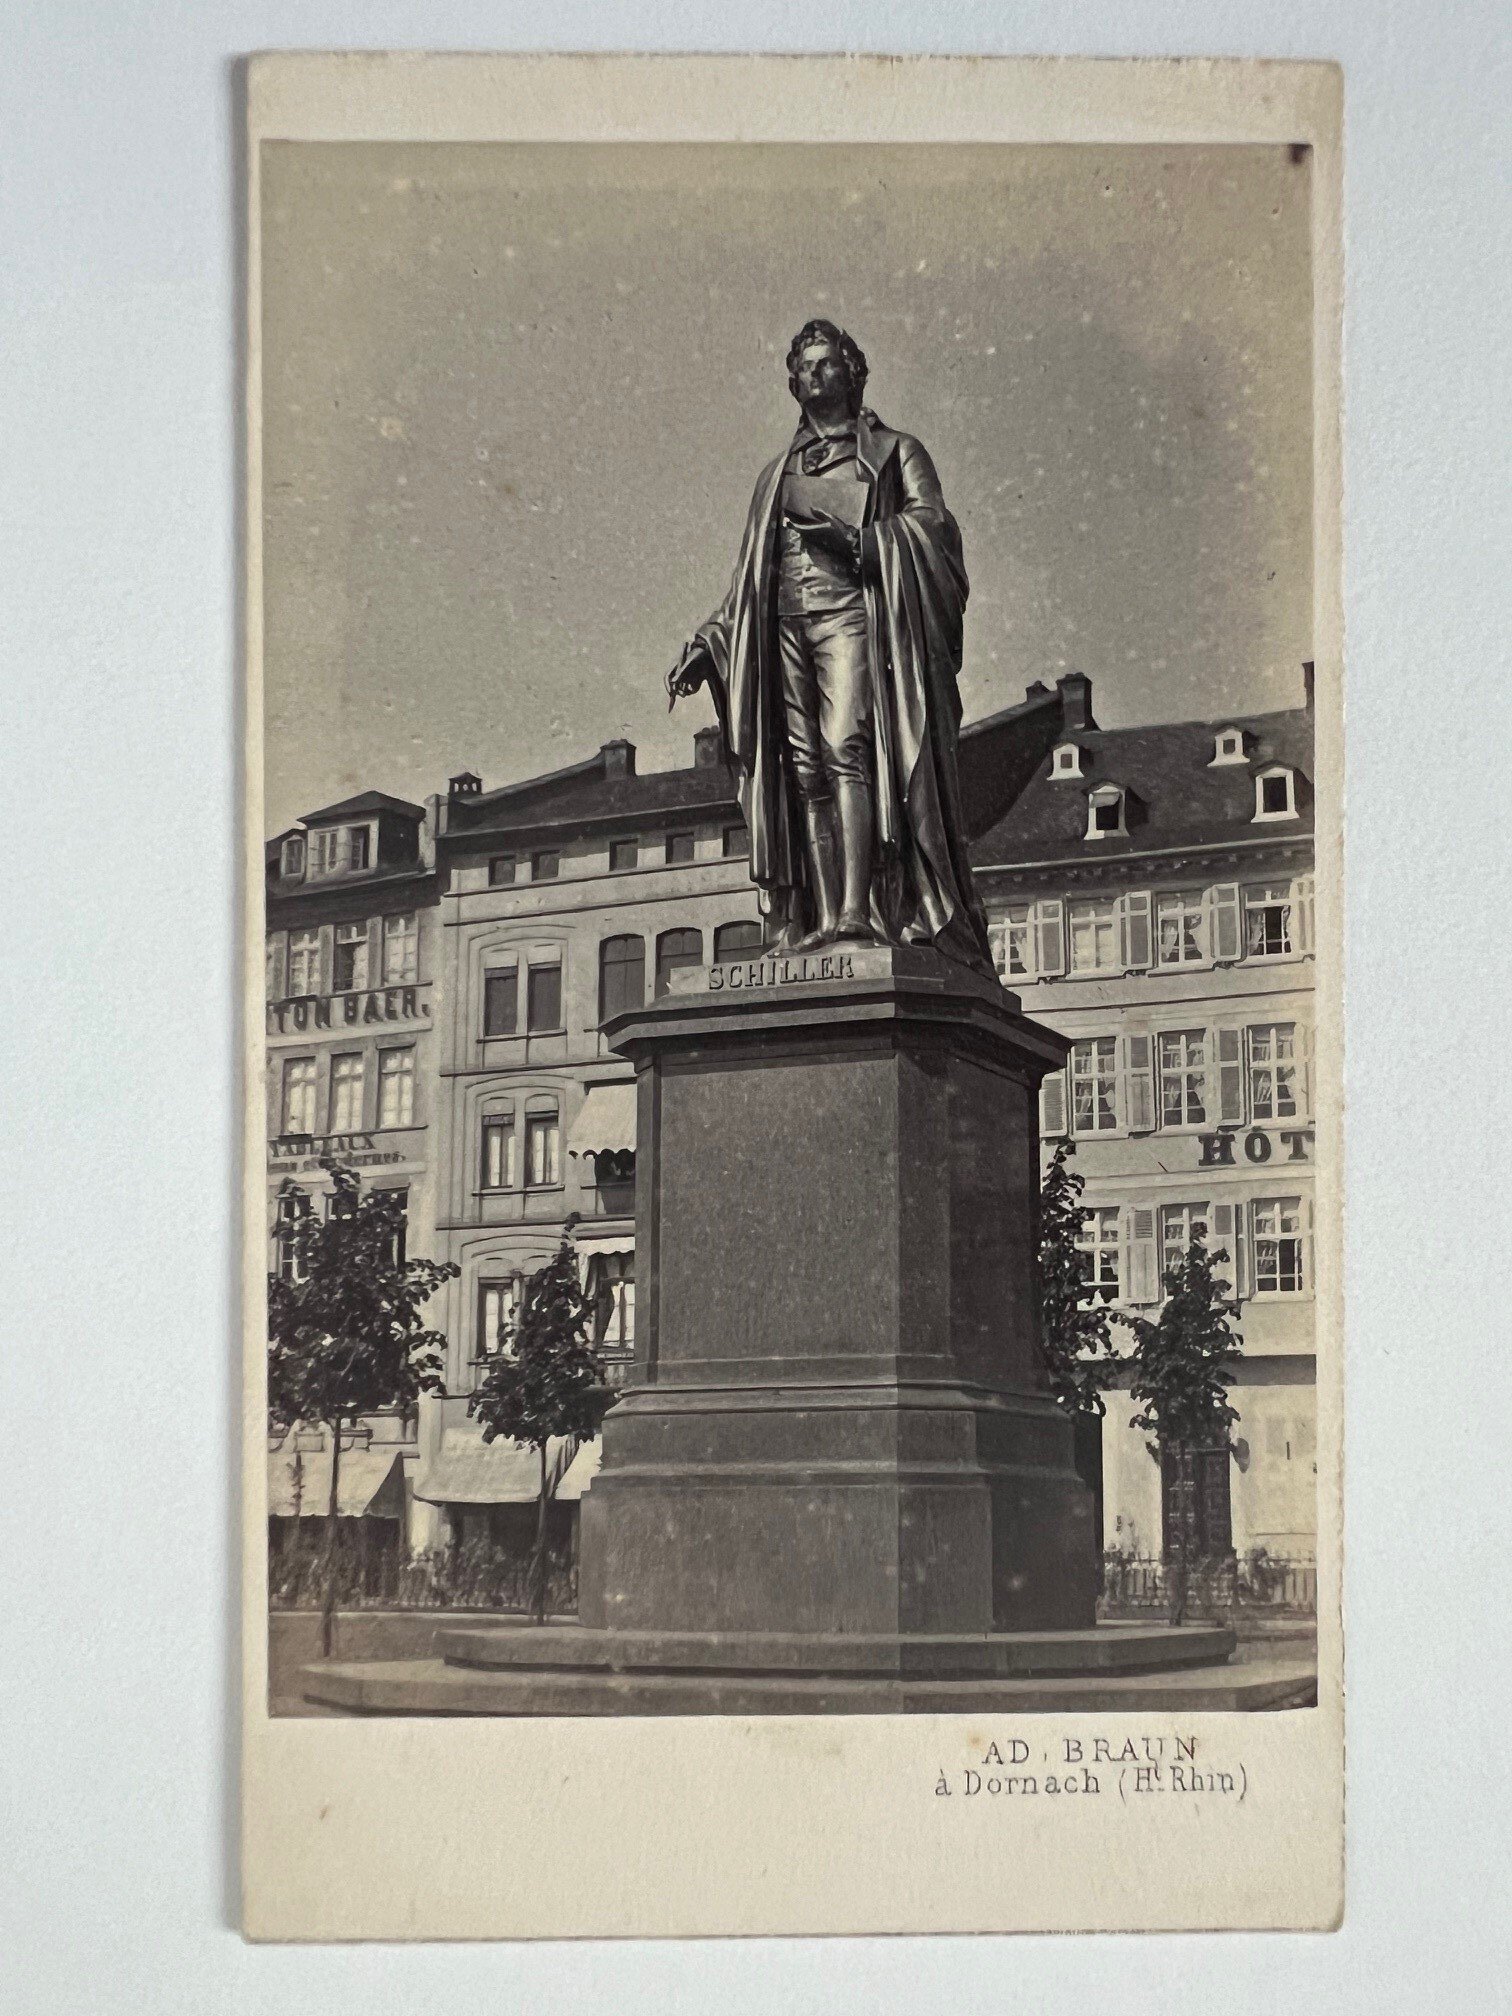 CdV, Adolphe Braun, Frankfurt, Schiller-Denkmal, ca. 1865. (Taunus-Rhein-Main - Regionalgeschichtliche Sammlung Dr. Stefan Naas CC BY-NC-SA)